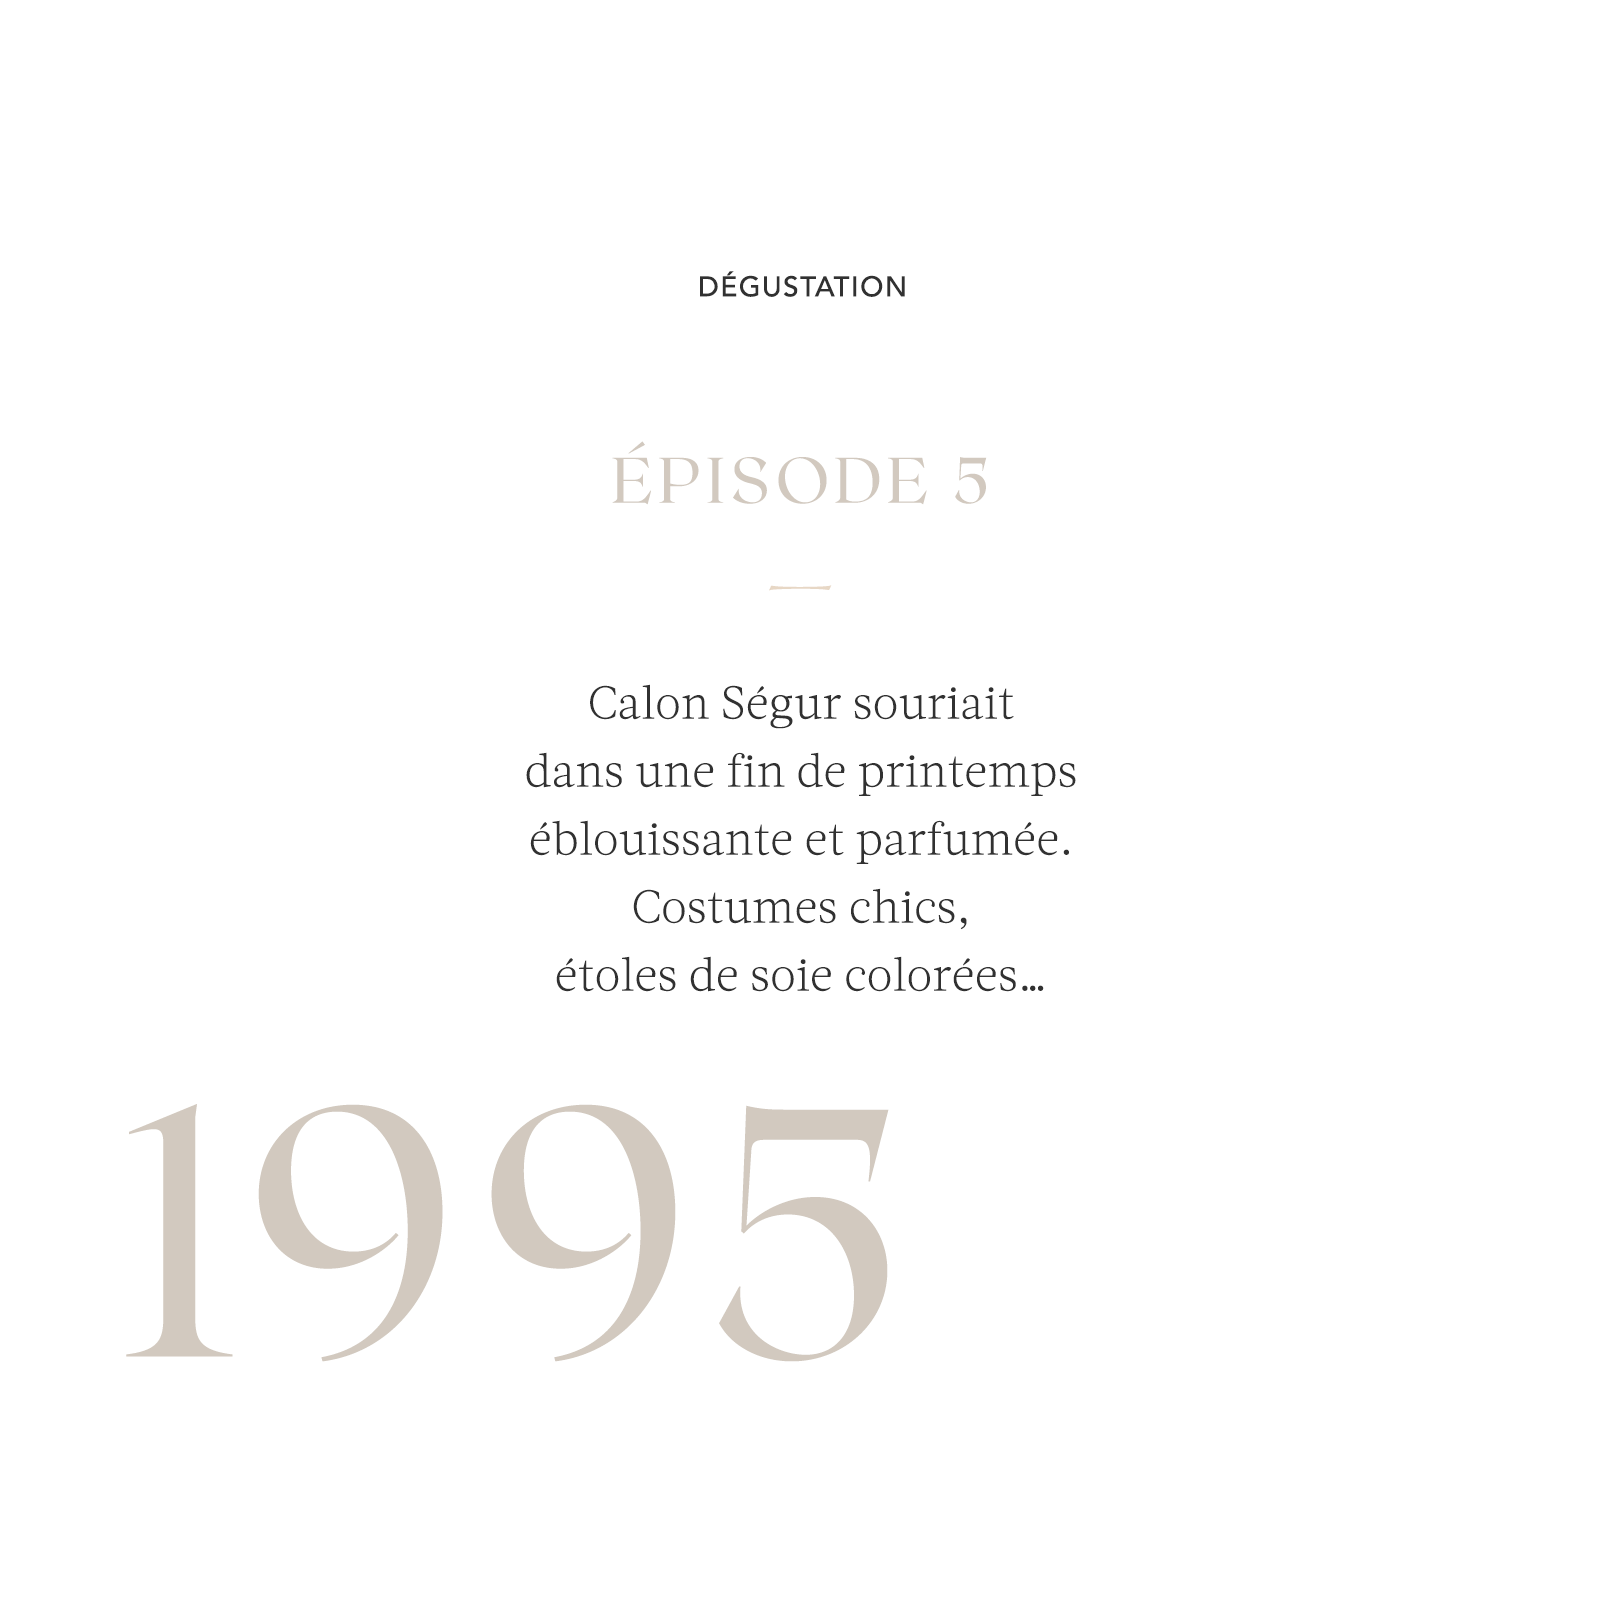 Histoire de dégustation / 1995